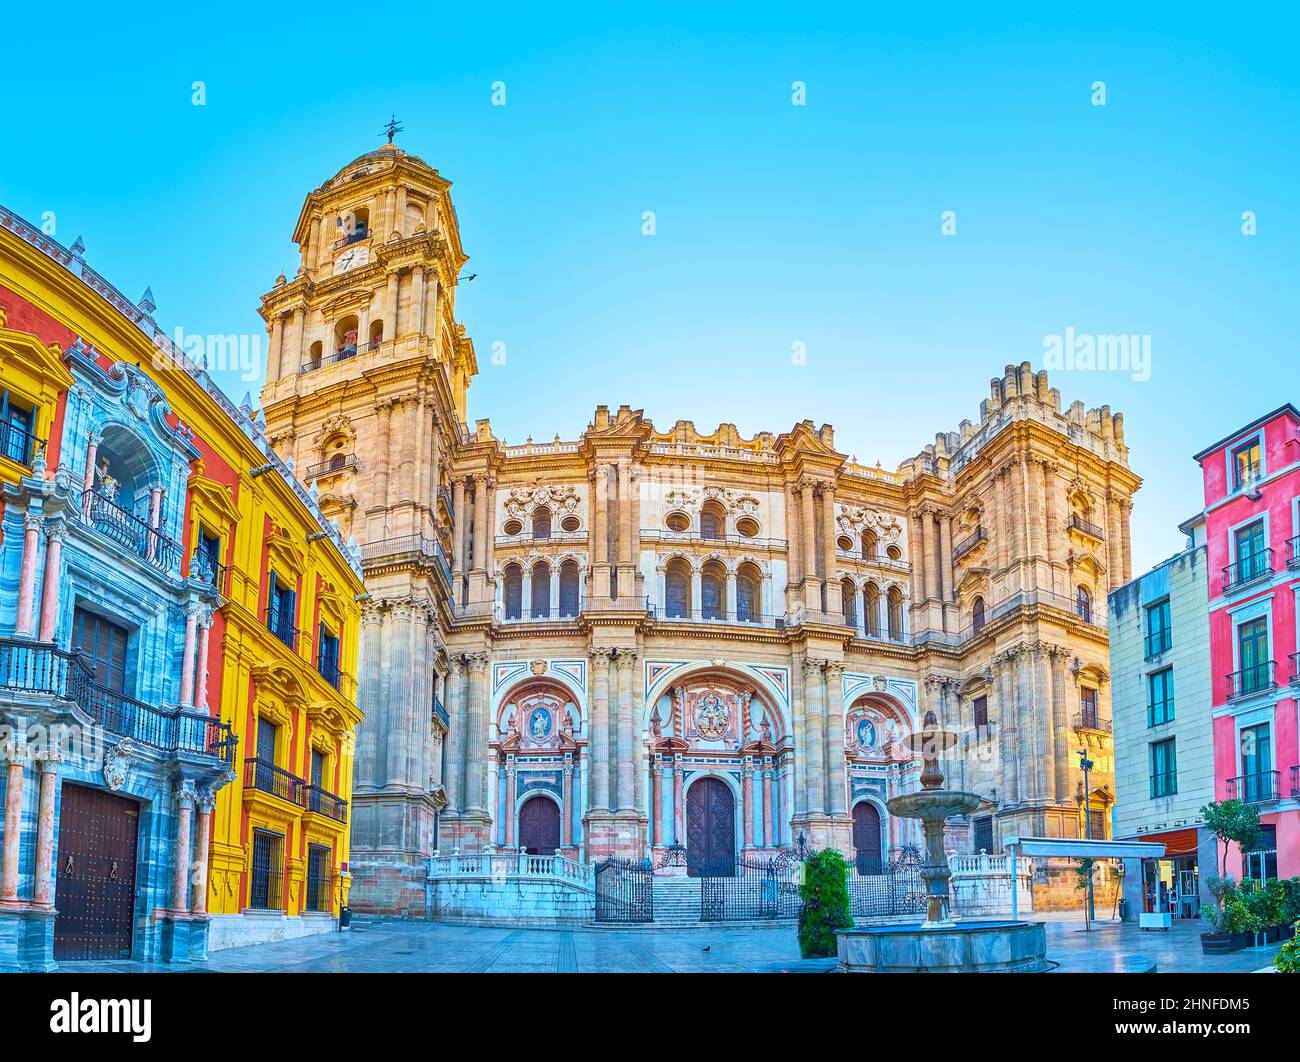 Panorama de la place Plaza Obispo avec l'exceptionnelle cathédrale d'Incarnation, la vieille fontaine et la façade du Palais de l'évêque, Malaga, Espagne Banque D'Images